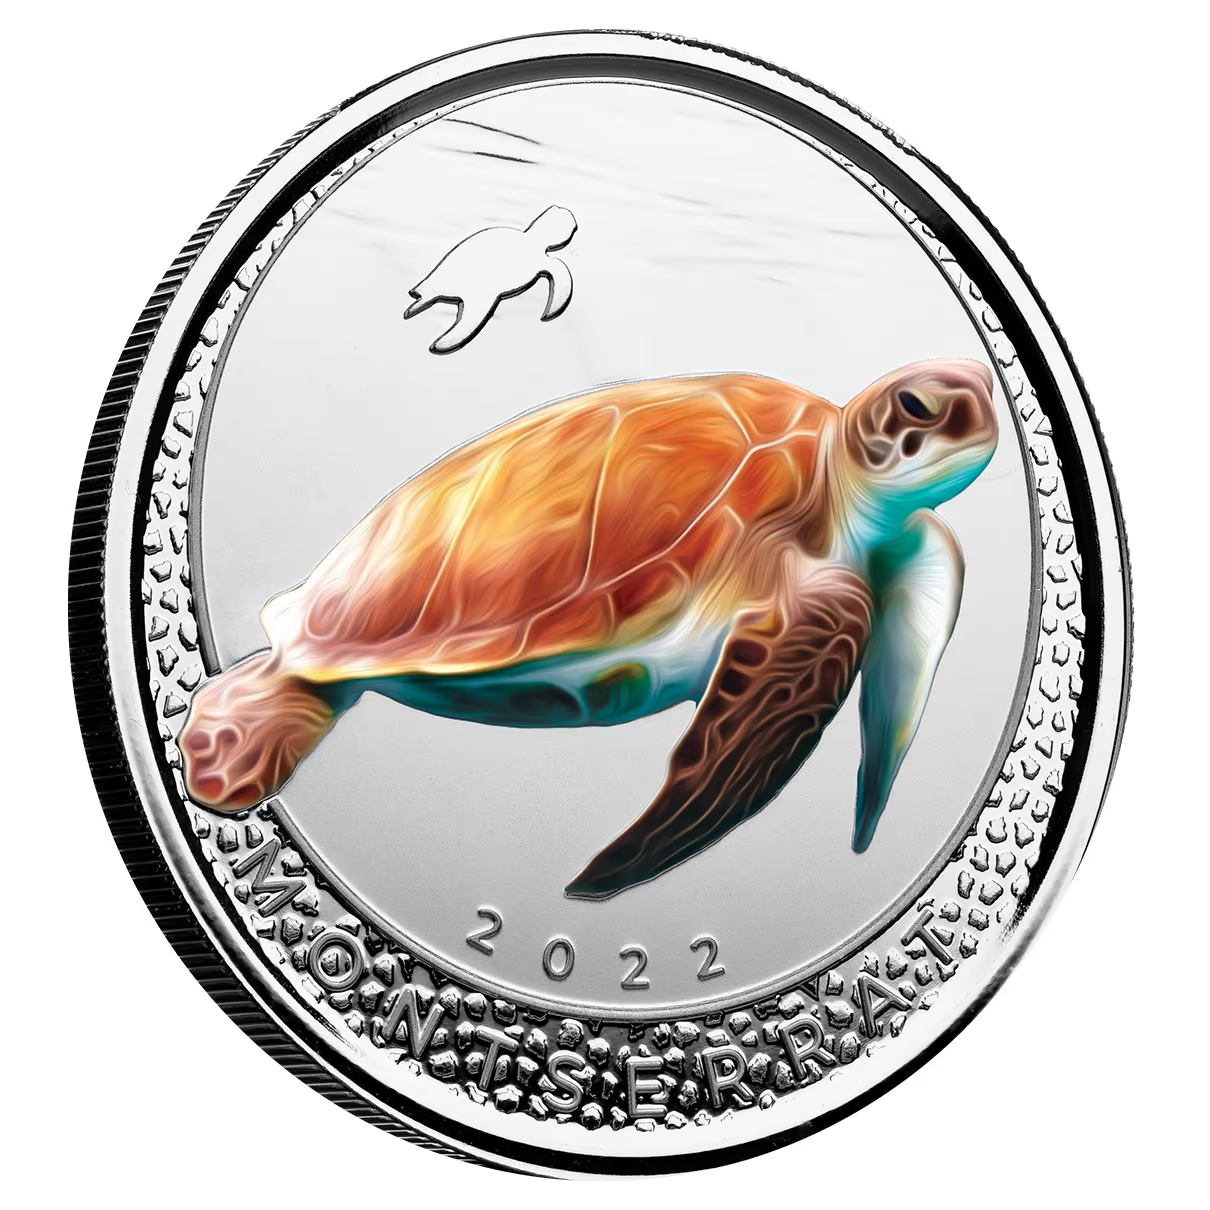 1 Oz Silver Coin 2022 EC8 Montserrat $2 Scottsdale Mint Color Proof - Sea Turtle-classypw.com-1